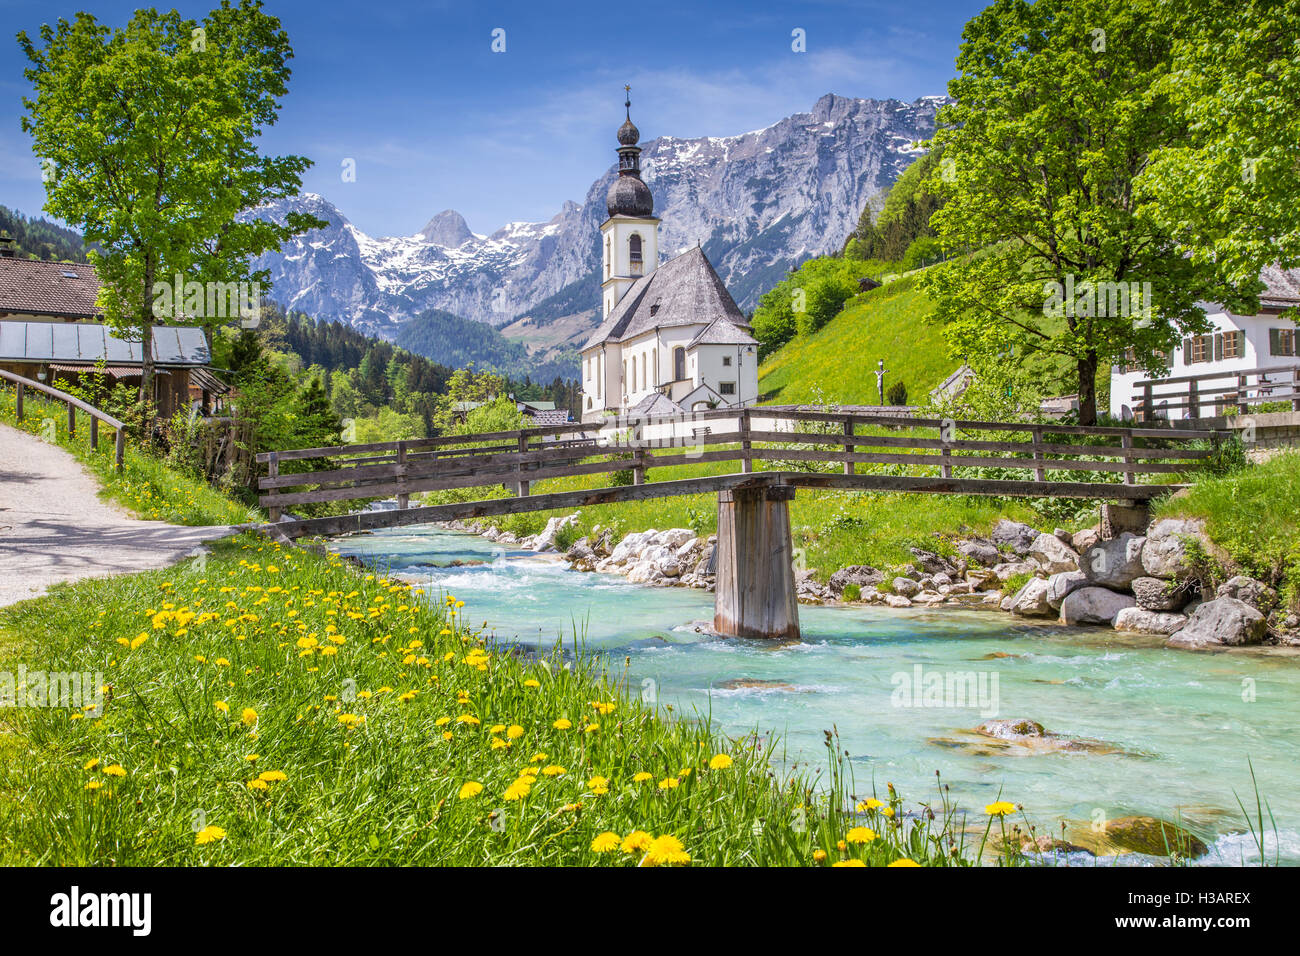 Scenic paesaggio di montagna delle Alpi con la famosa Chiesa Parrocchiale di San Sebastian nel villaggio di Ramsau in primavera, Berchtesgadener Land, Germania Foto Stock